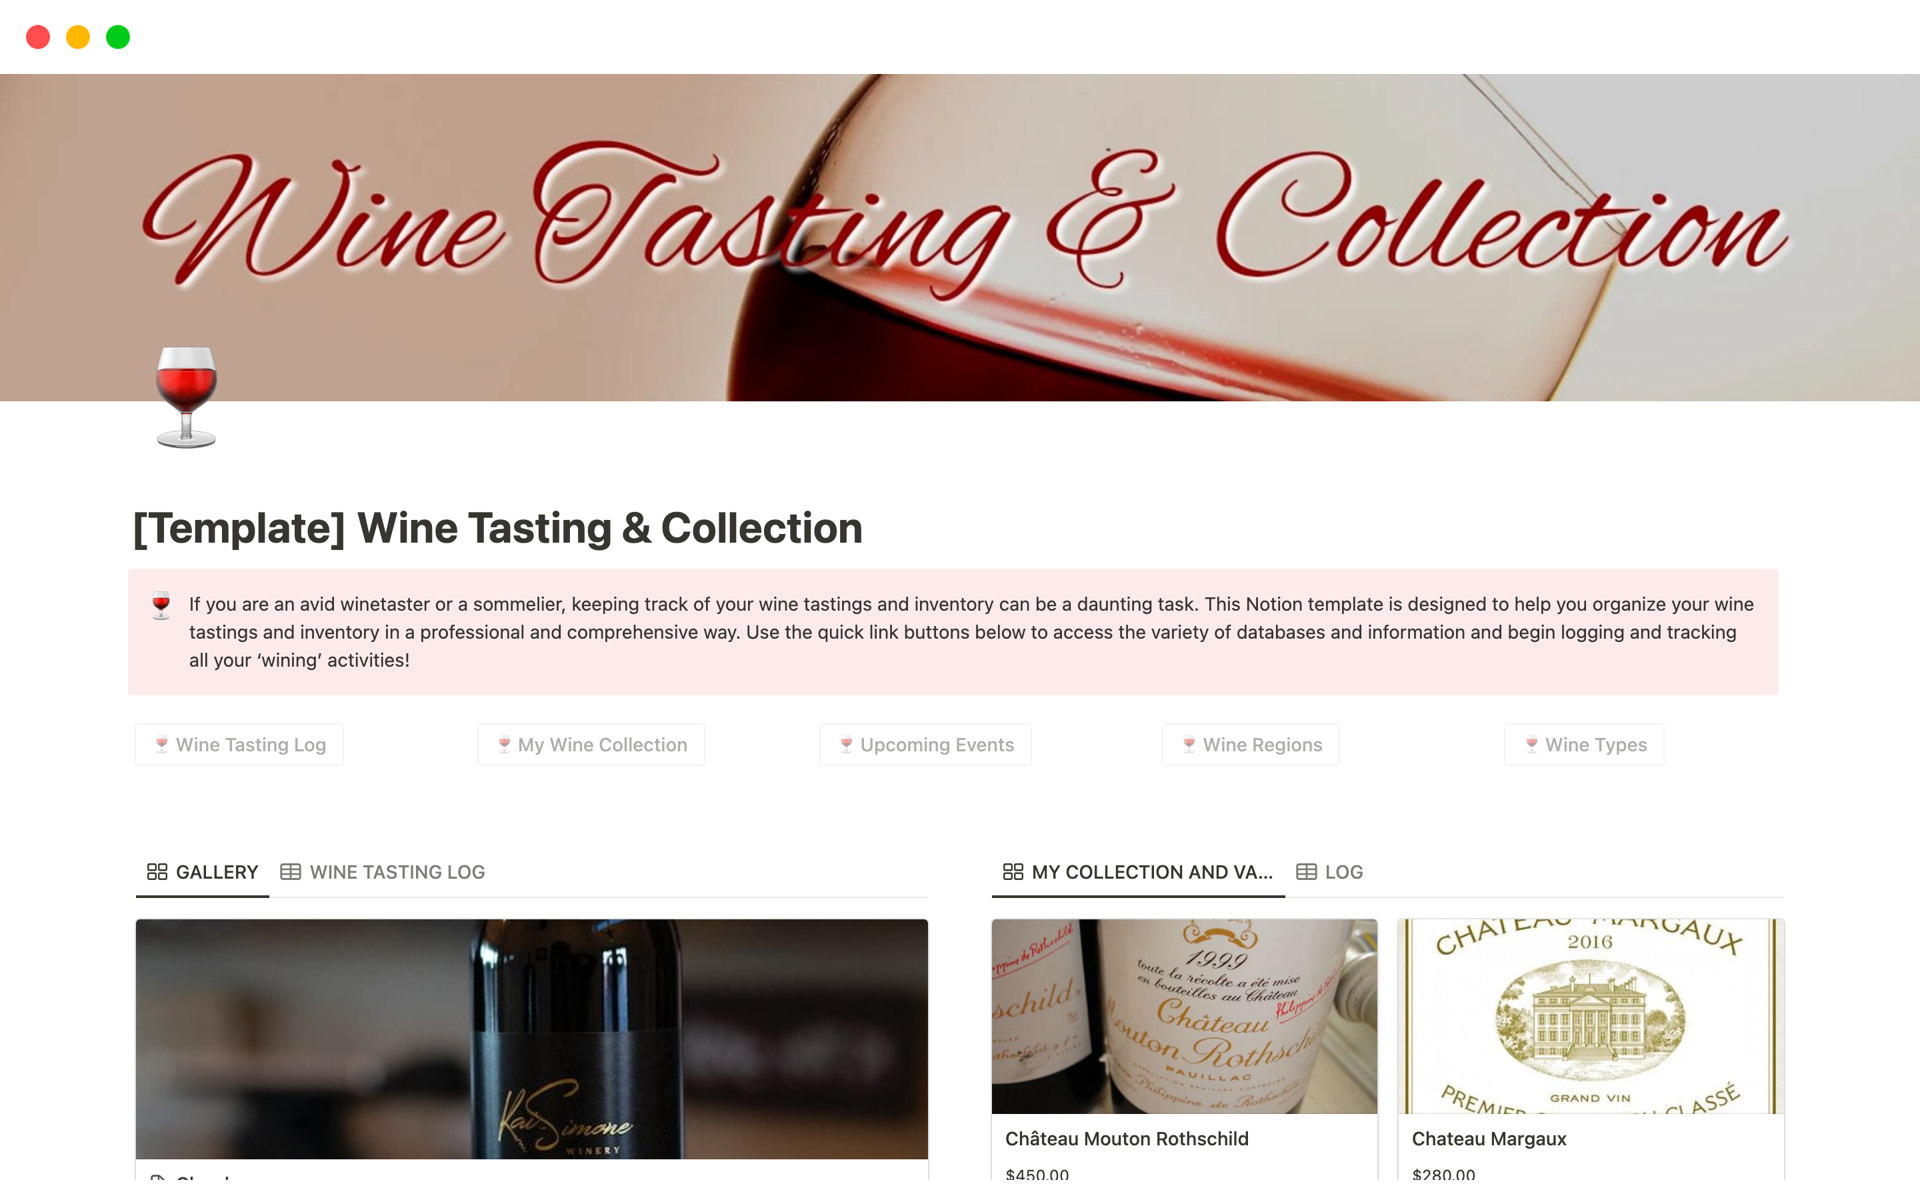 Vista previa de una plantilla para Wine Tasting & Collection